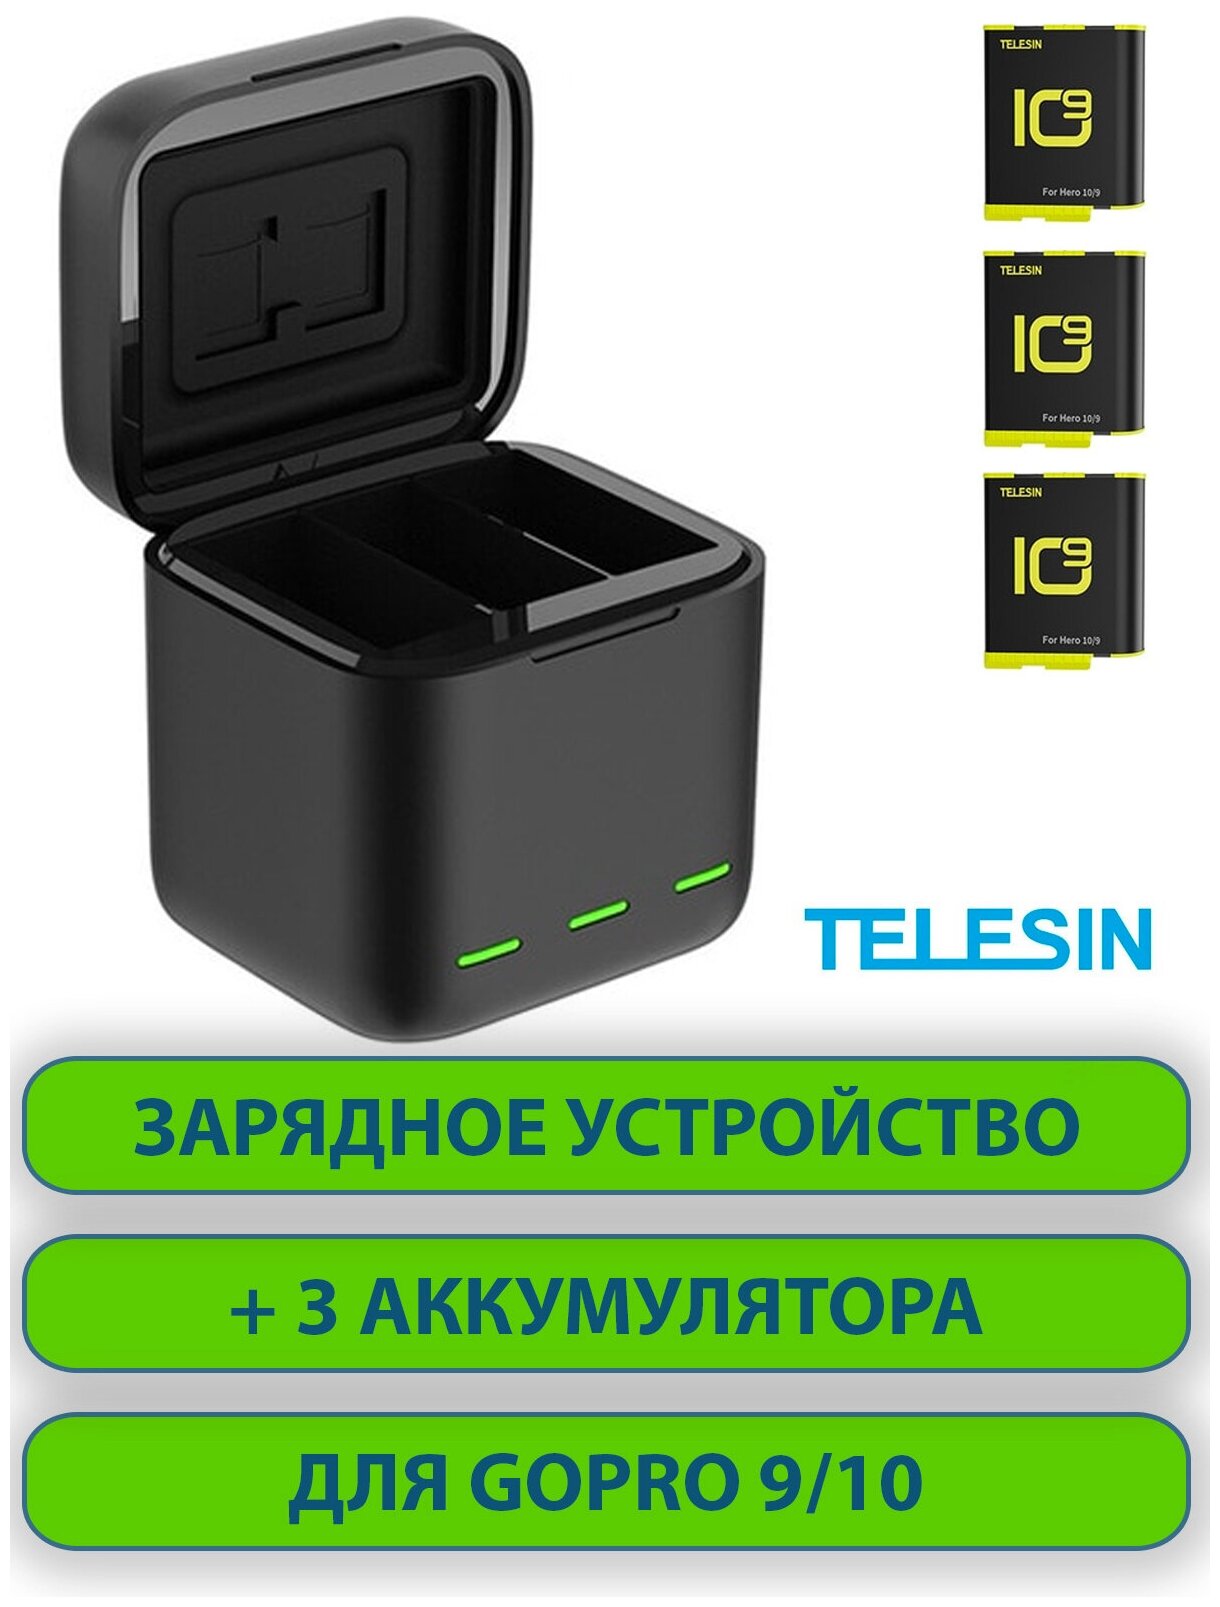 Зарядное устройство / зарядка кубик с 3 аккумуляторами для GoPro 9 10 TELESIN